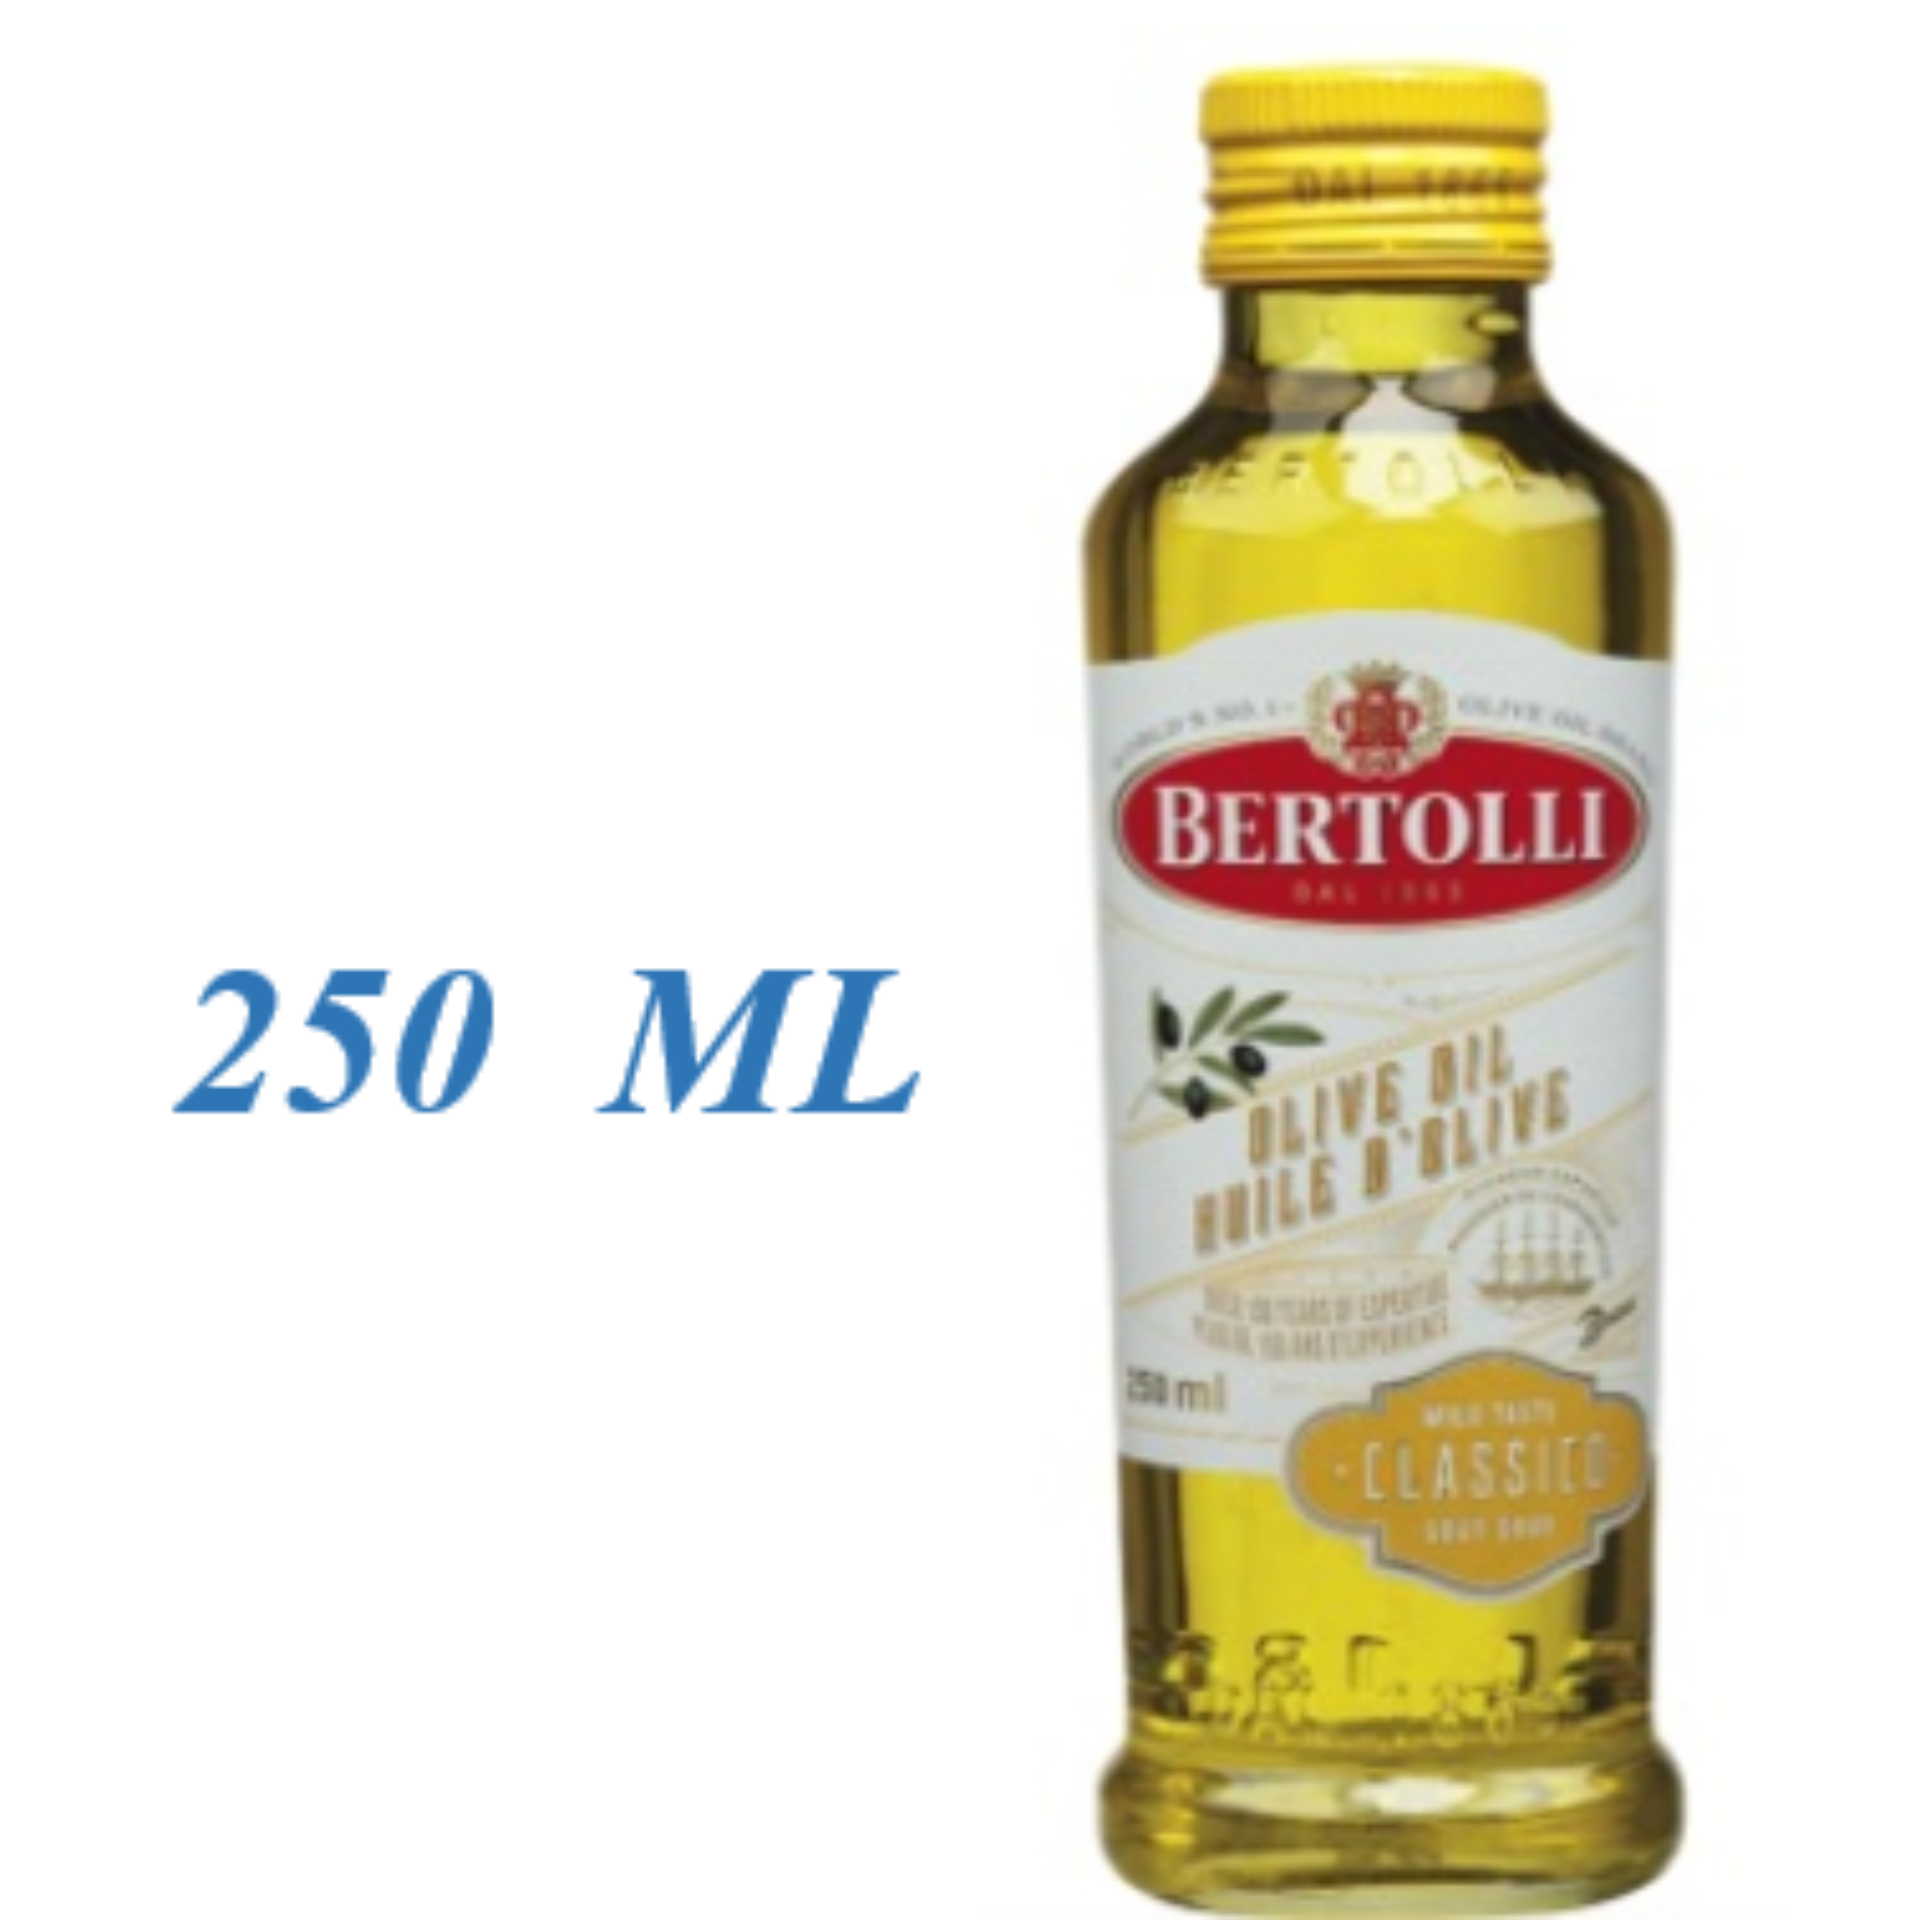 น้ำมันมะกอก Bertolli , Olive Oil (Classico) ขนาด 250 ML